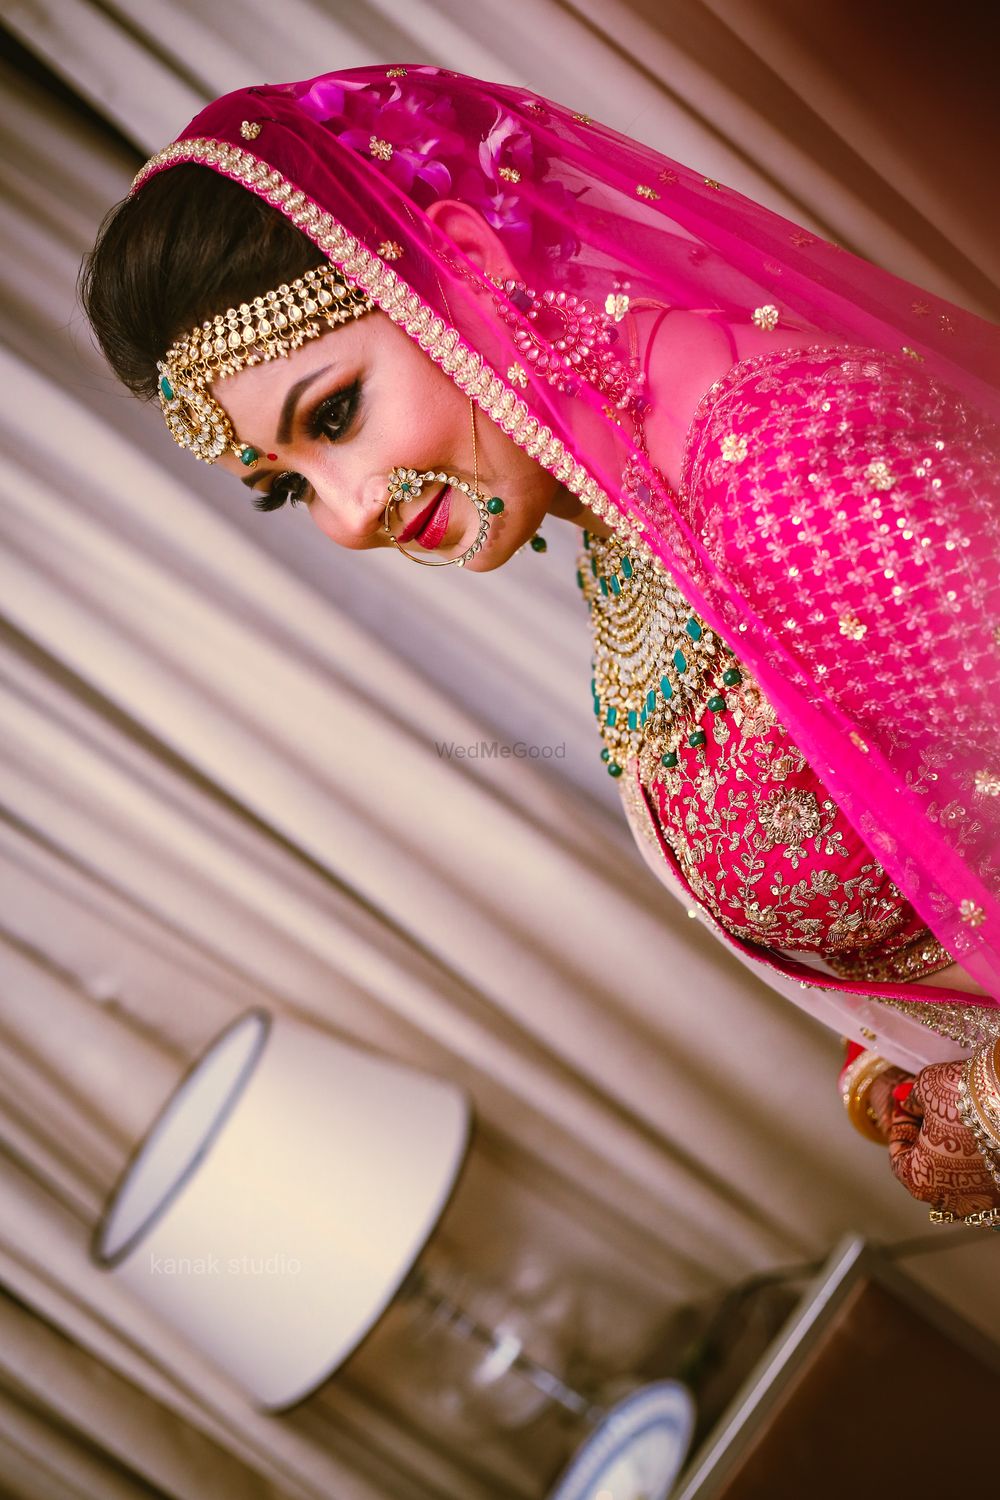 Photo From Bridal photoshoot (Shreya) - By Kanak Studio